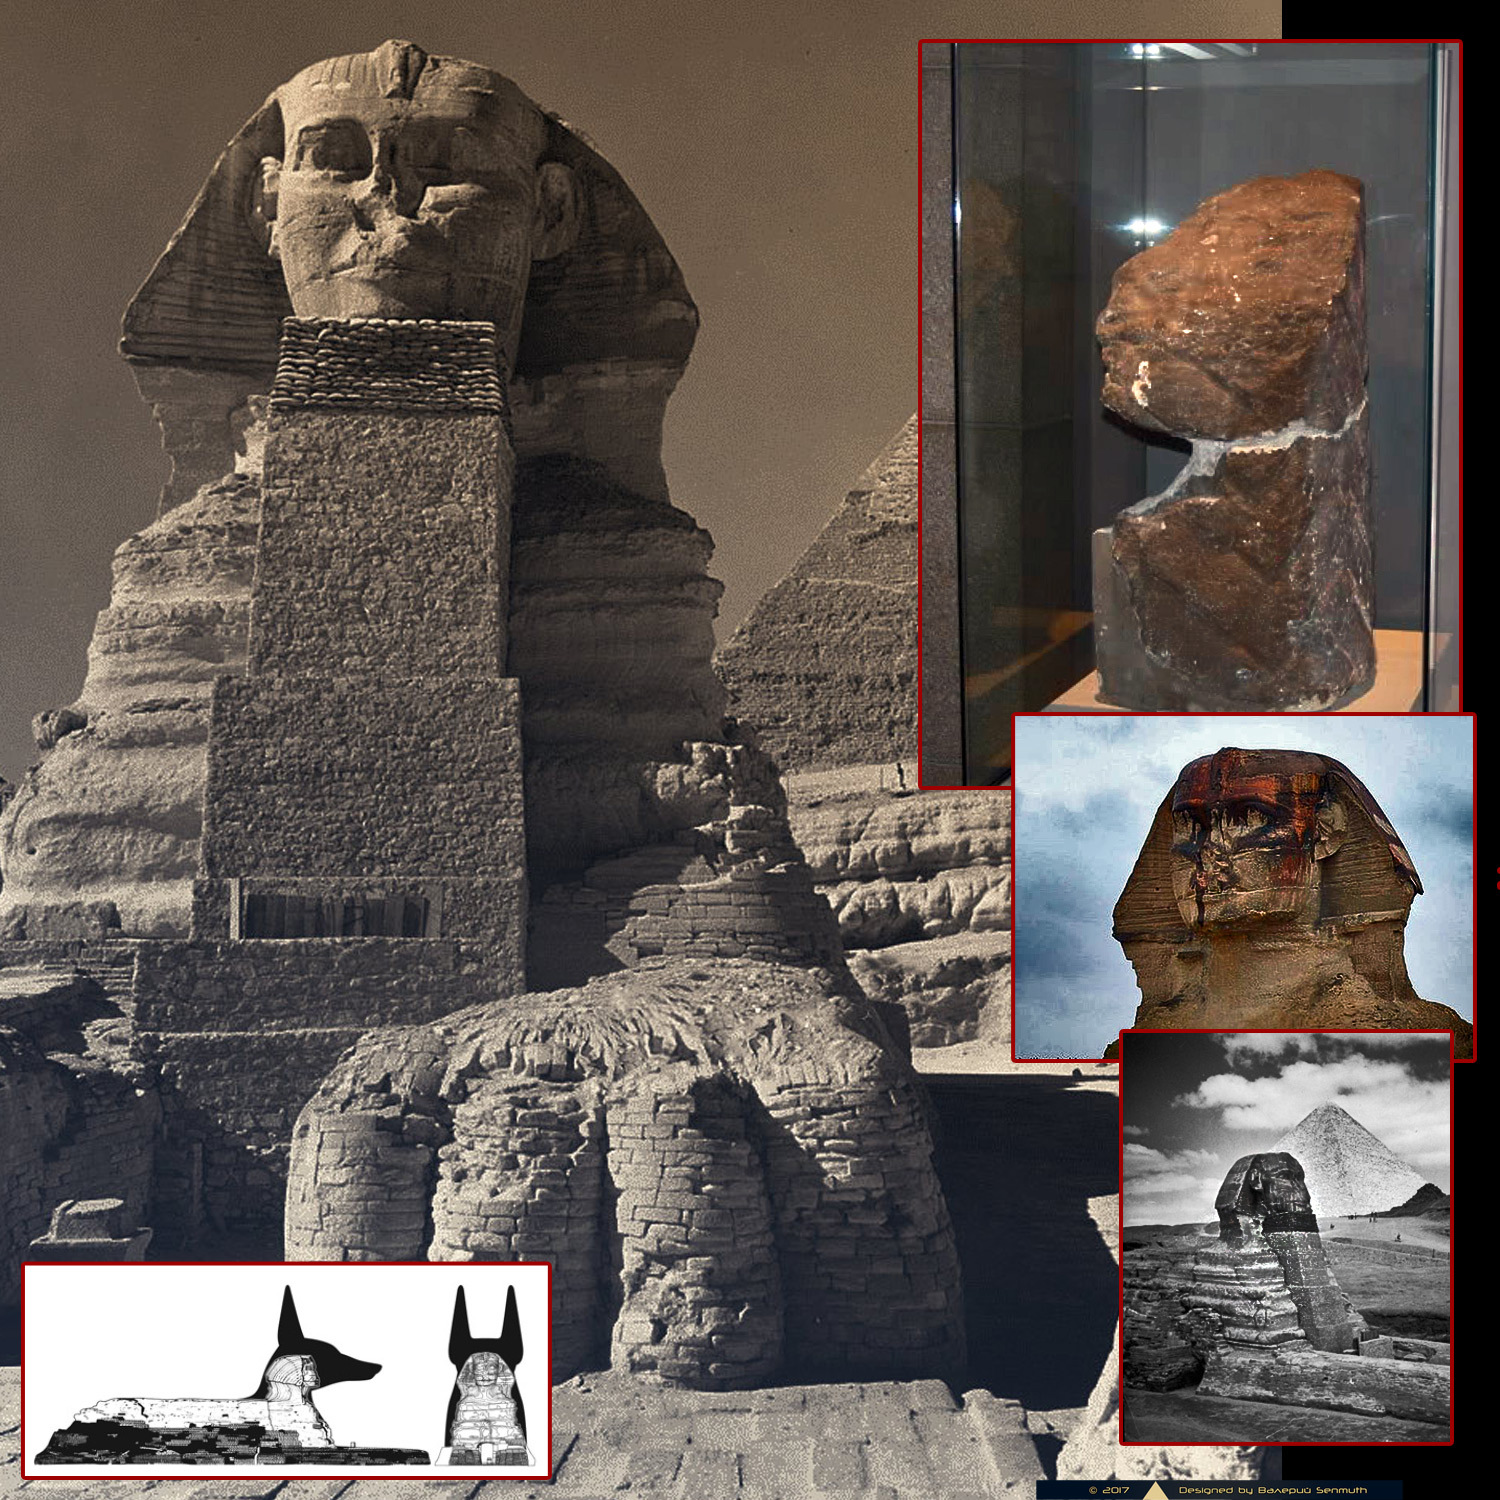 Исторические о древнем египте